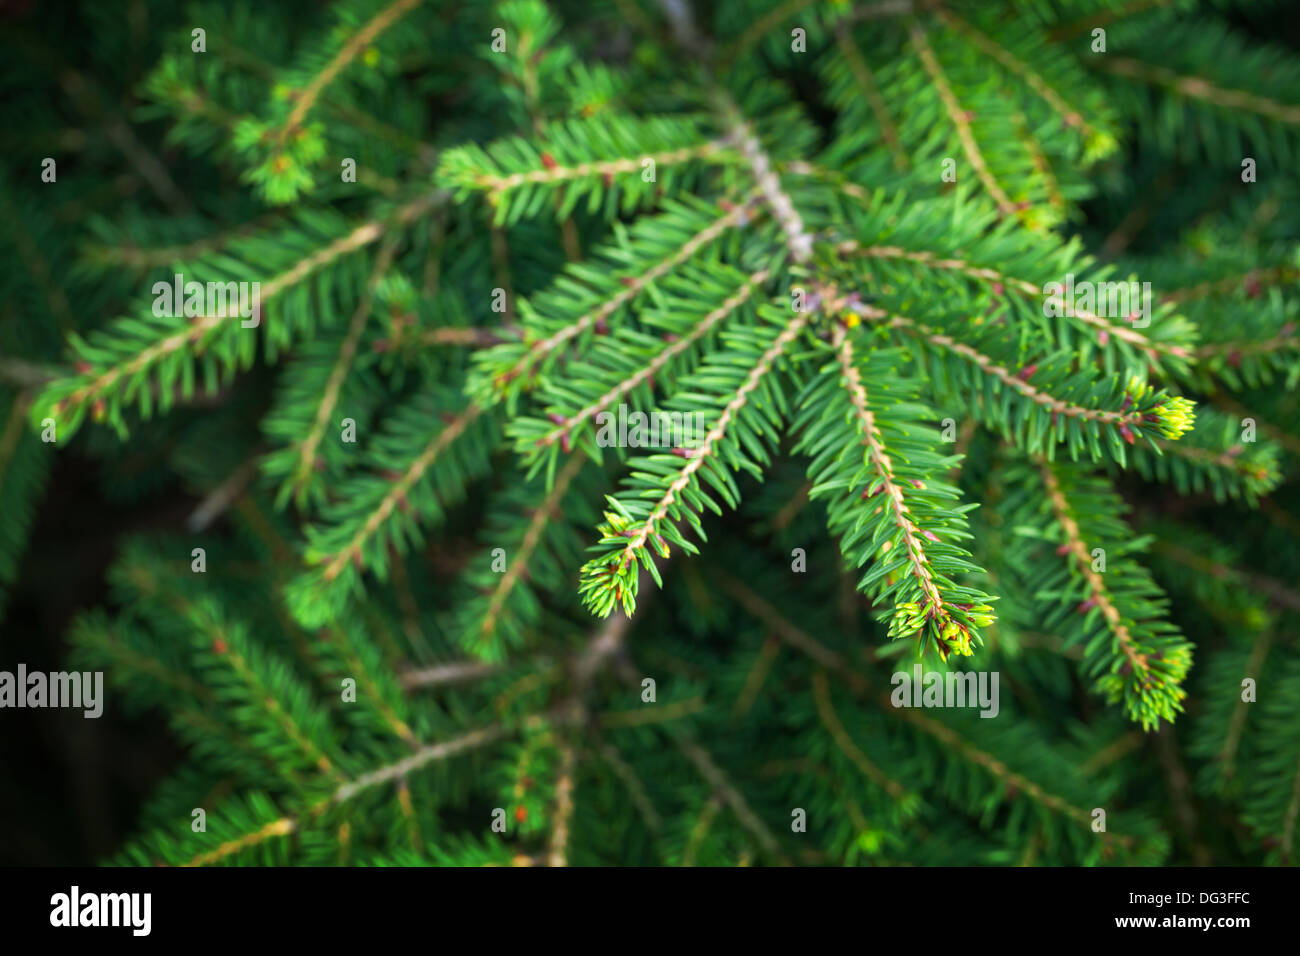 Leuchtend grüne Tanne Baum Zweige Nahaufnahme Foto Stockfoto